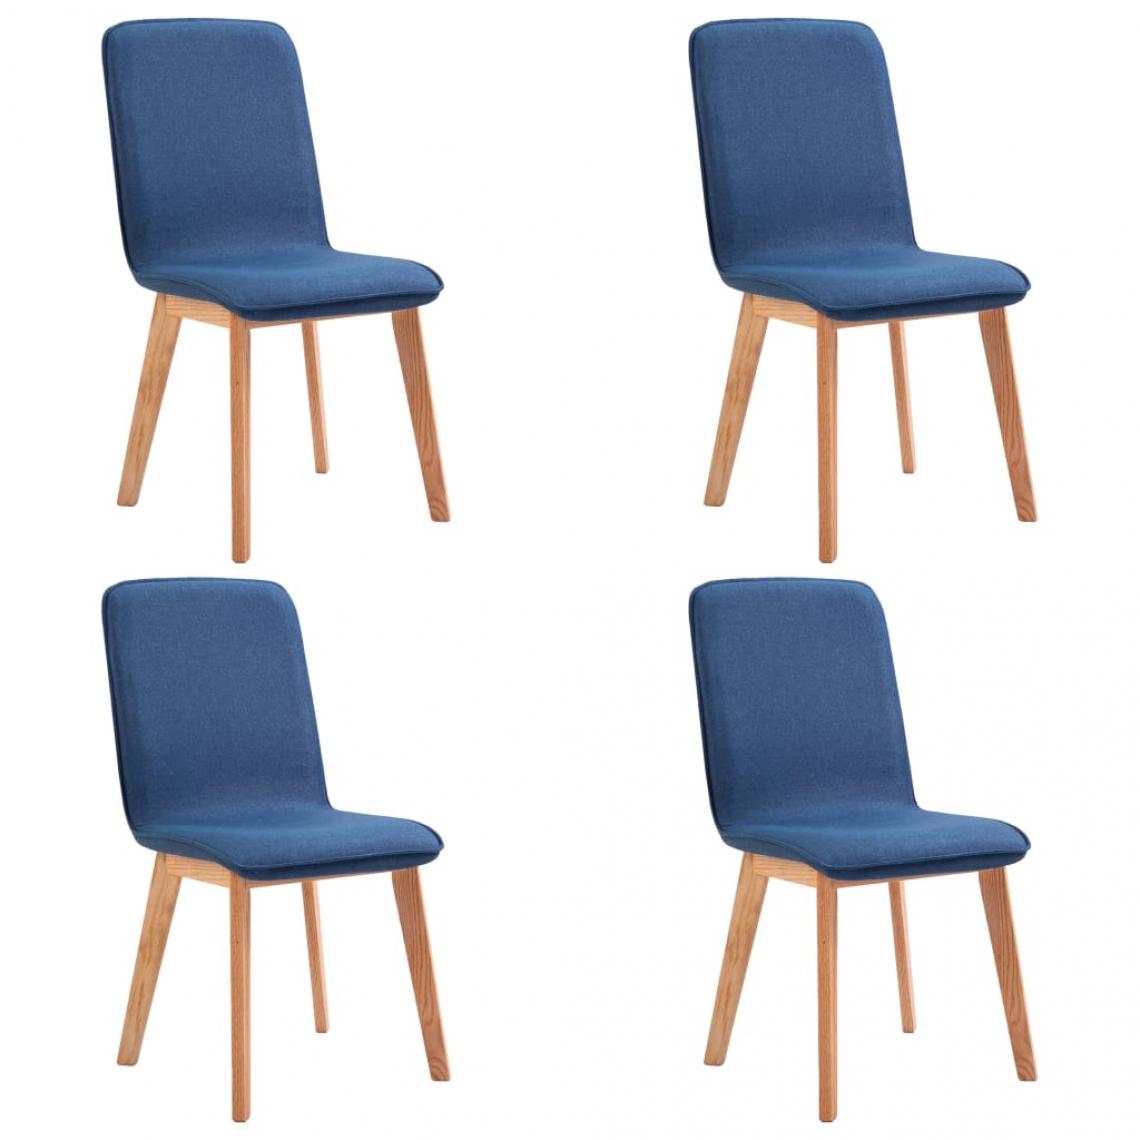 Decoshop26 - Lot de 4 chaises de salle à manger cuisine design moderne tissu bleu et chêne massif CDS021306 - Chaises